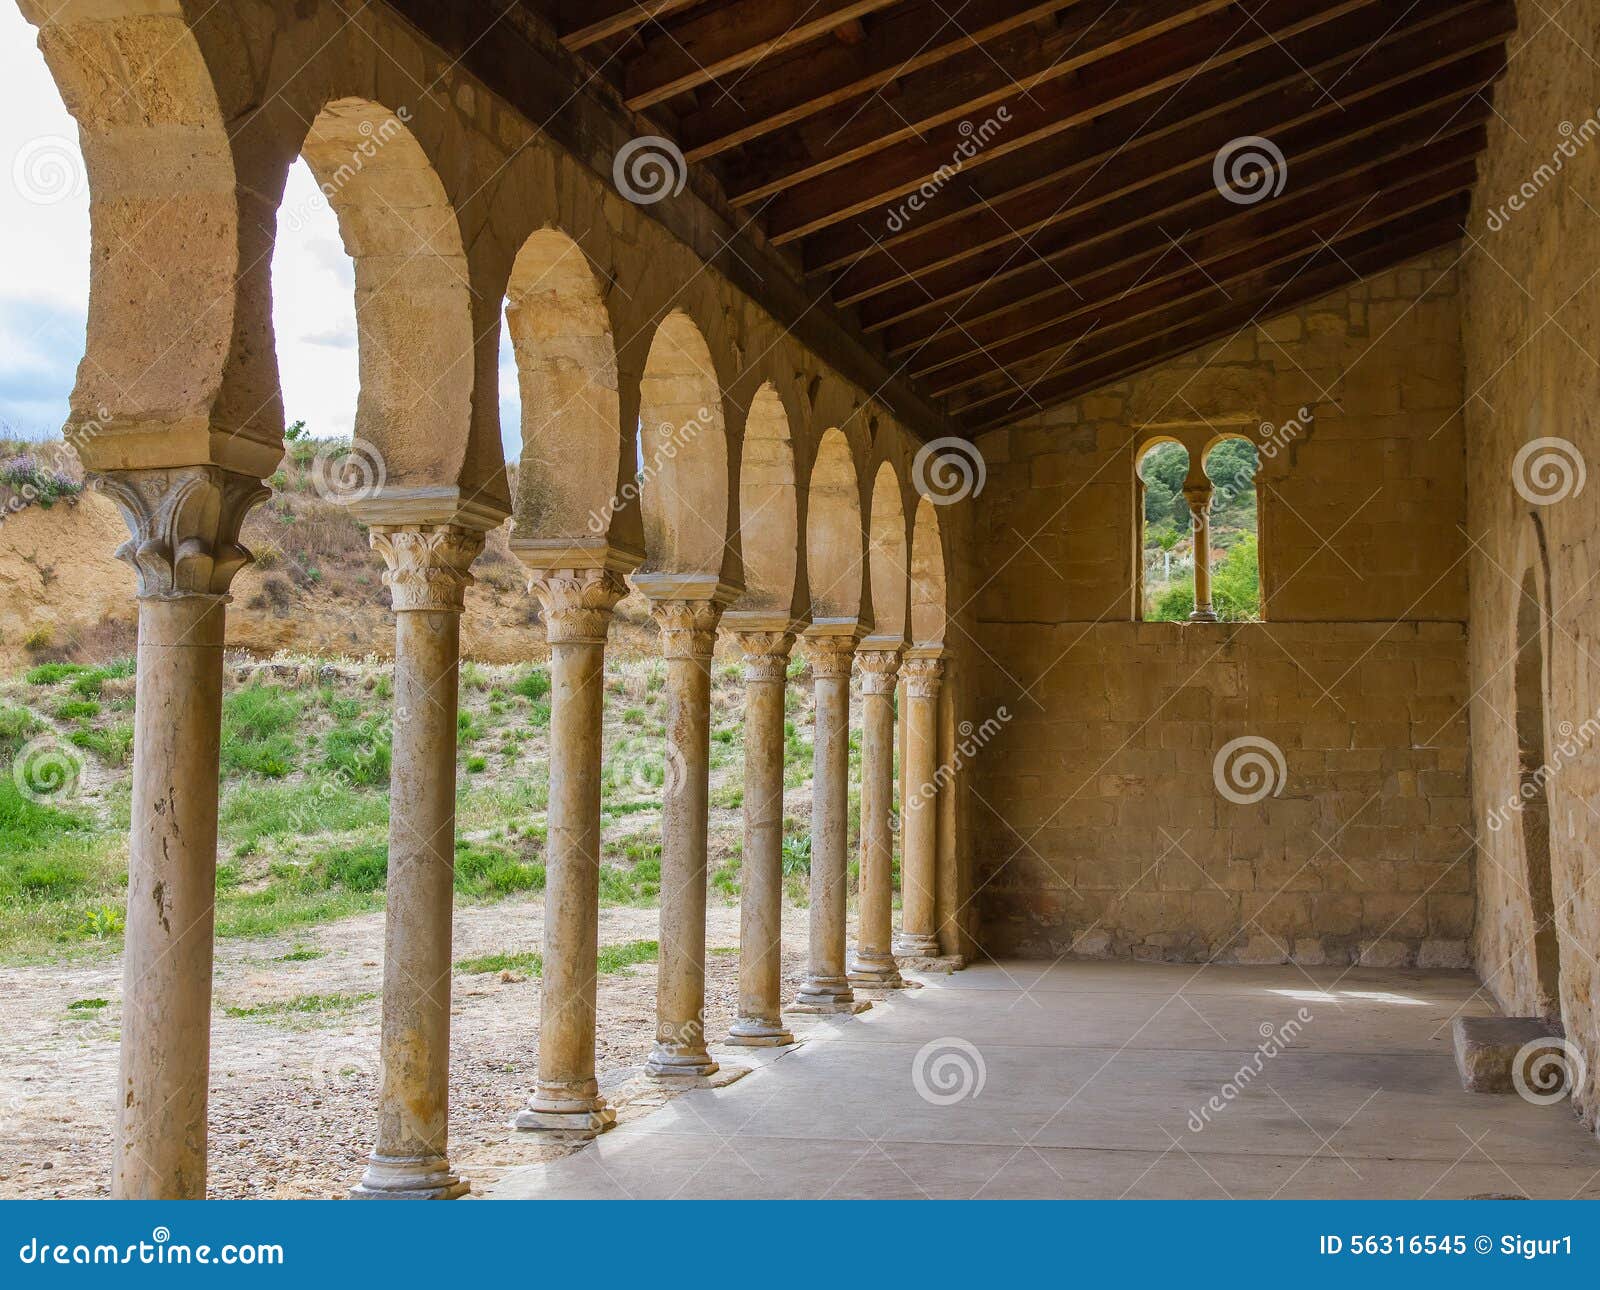 monastery of san miguel de escalada